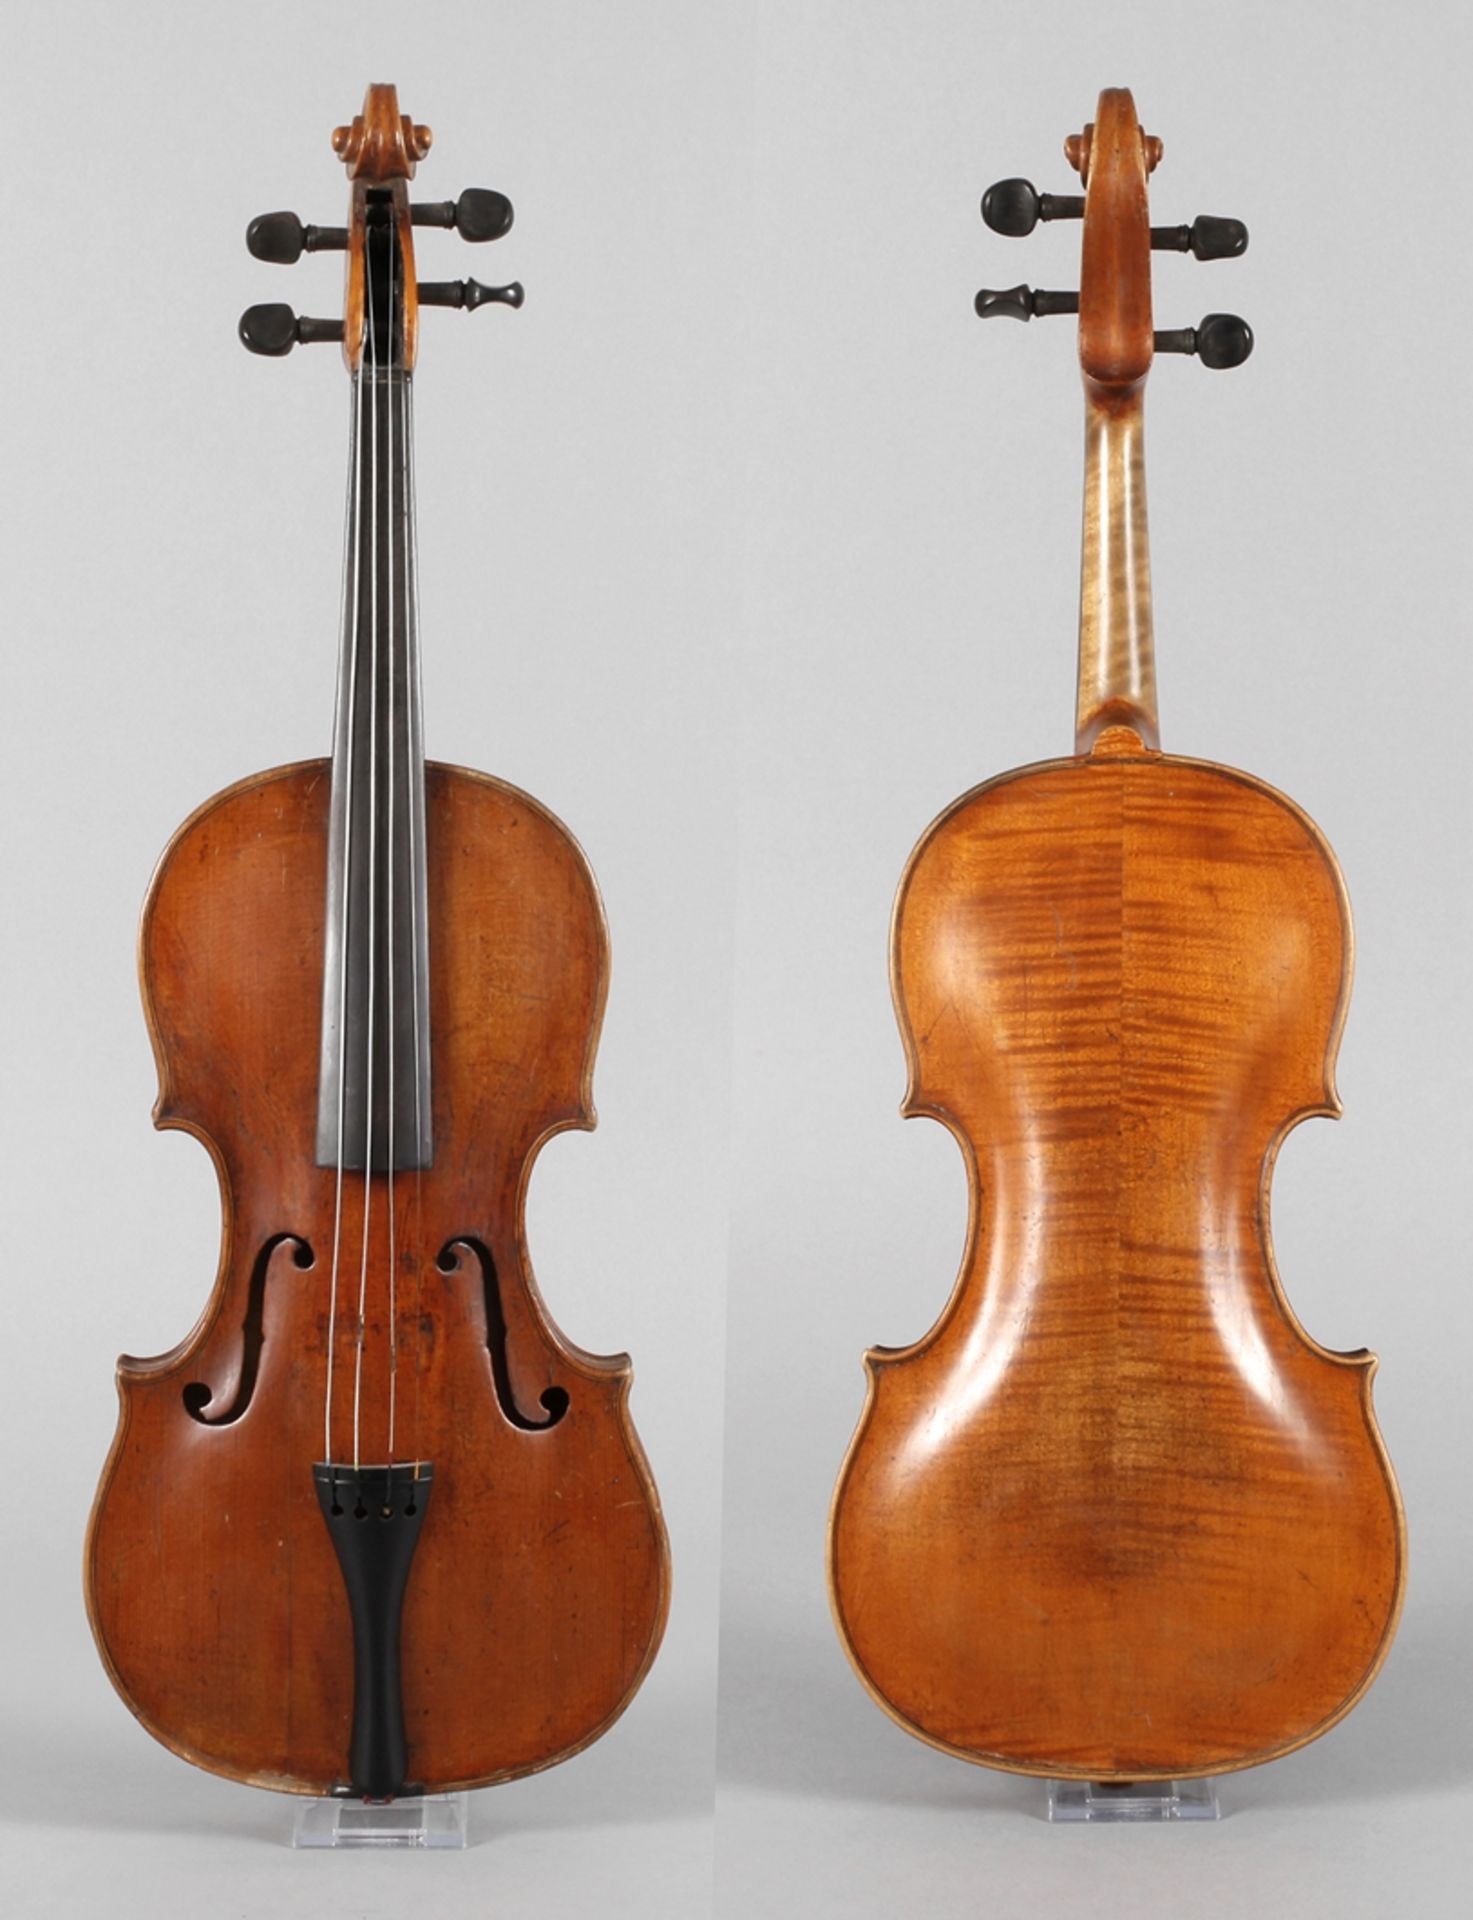 Violineinnen auf Klebezettel bezeichnet Ignatio Bentze in Italia a Croemona 1797, geteilter, eng